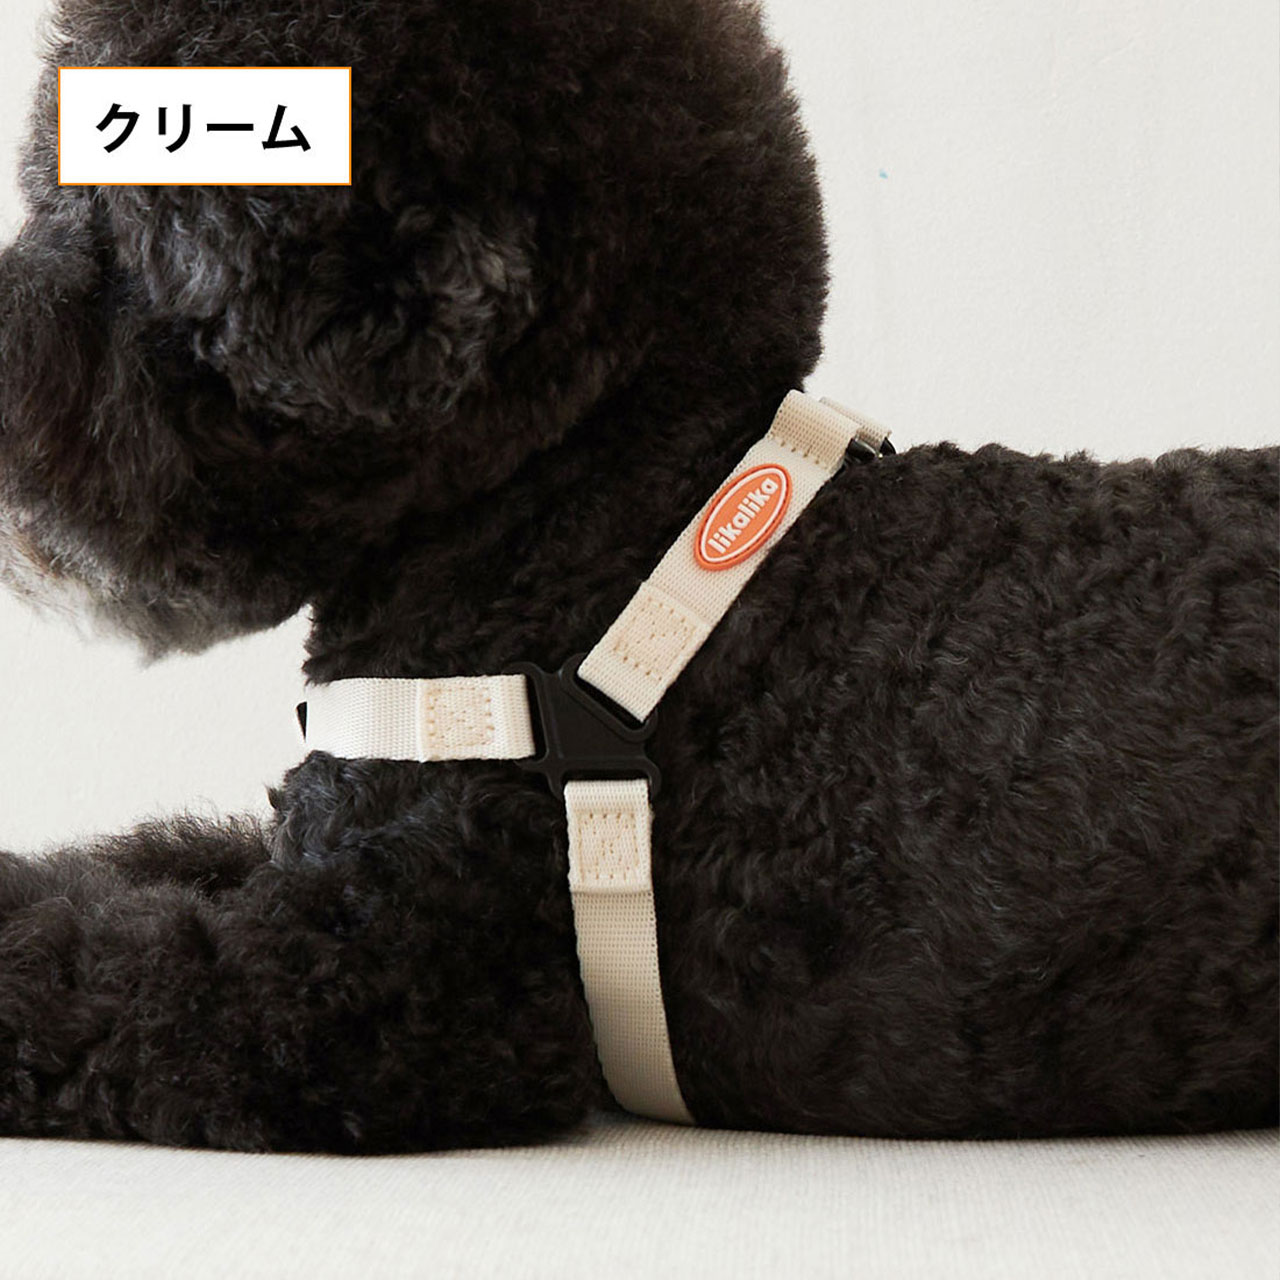 超格安価格 M L ポップハーネス 愛犬へのプレゼントに 韓国で大人気のペットアイテムブランド ロープ